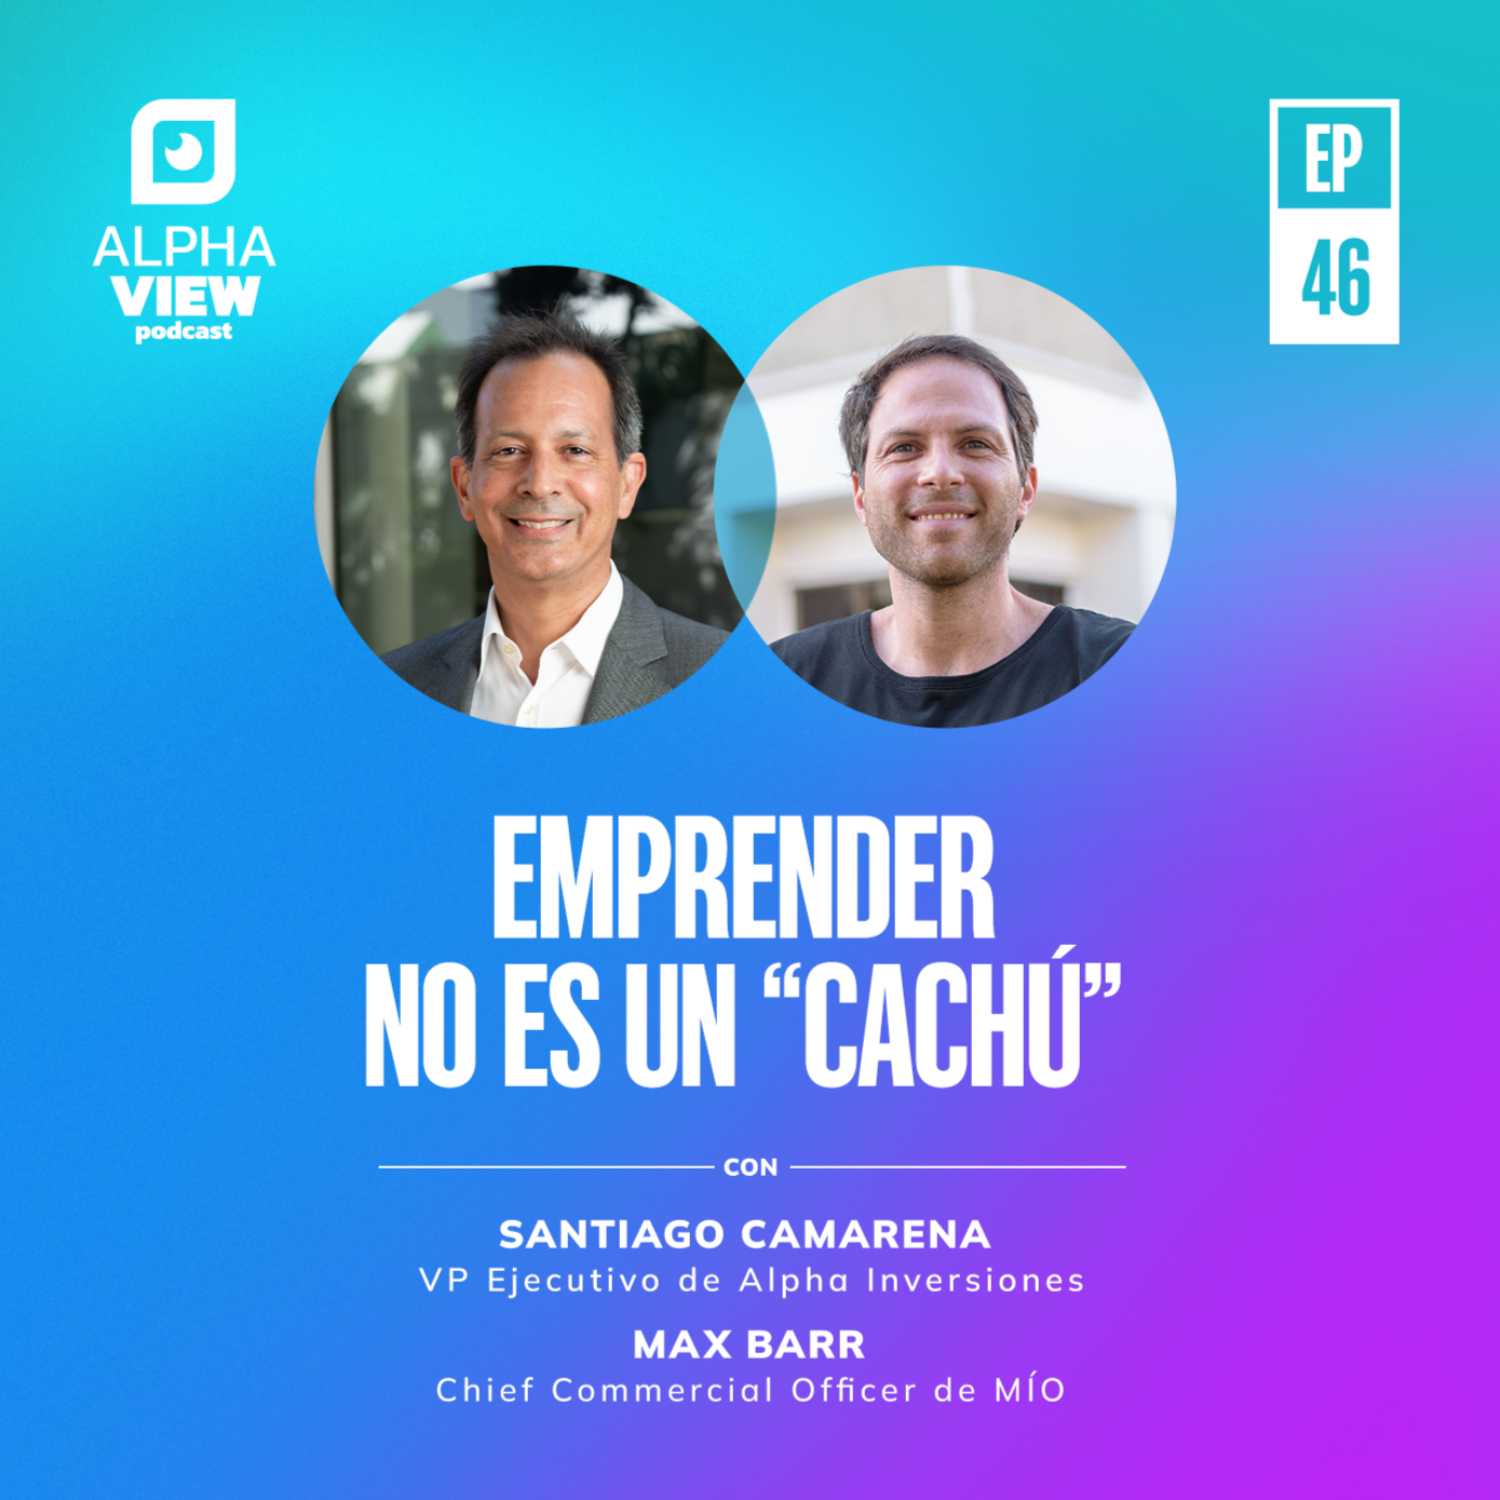 "Emprender no es un cachú" con Santiago Camarena y Max Barr